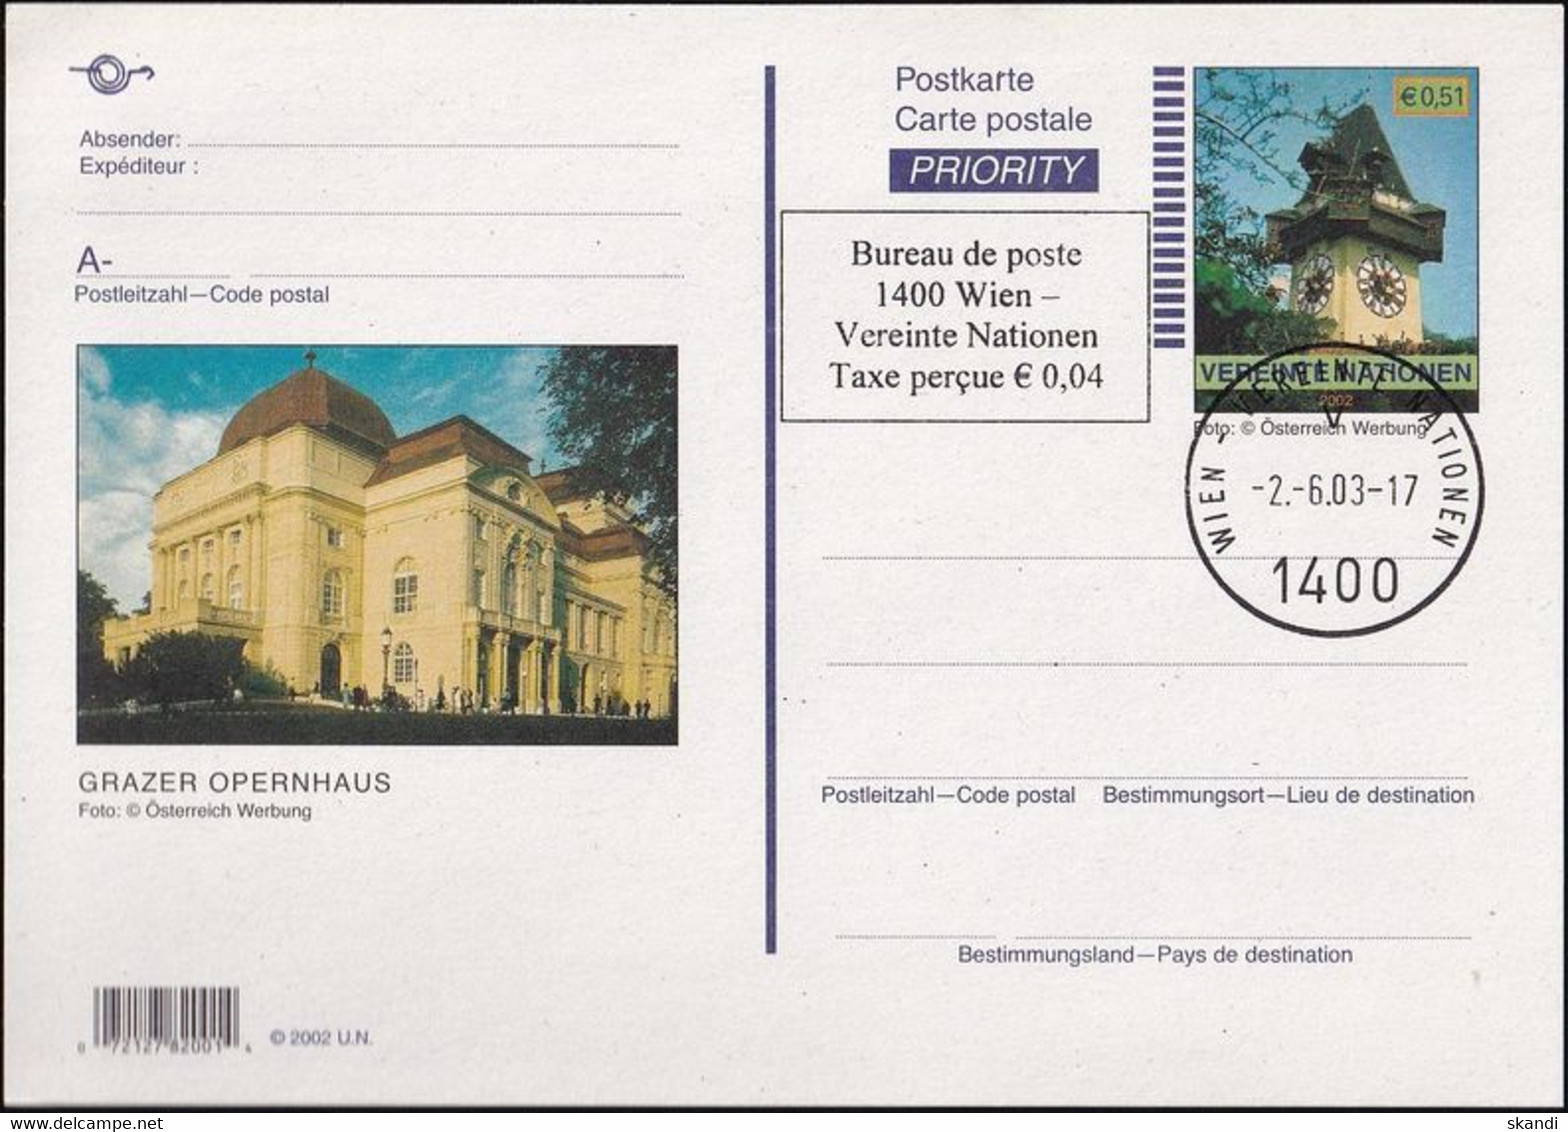 UNO WIEN 2003 Mi-Nr. P 15 Postkarte / Ganzsache O EST Used - Covers & Documents